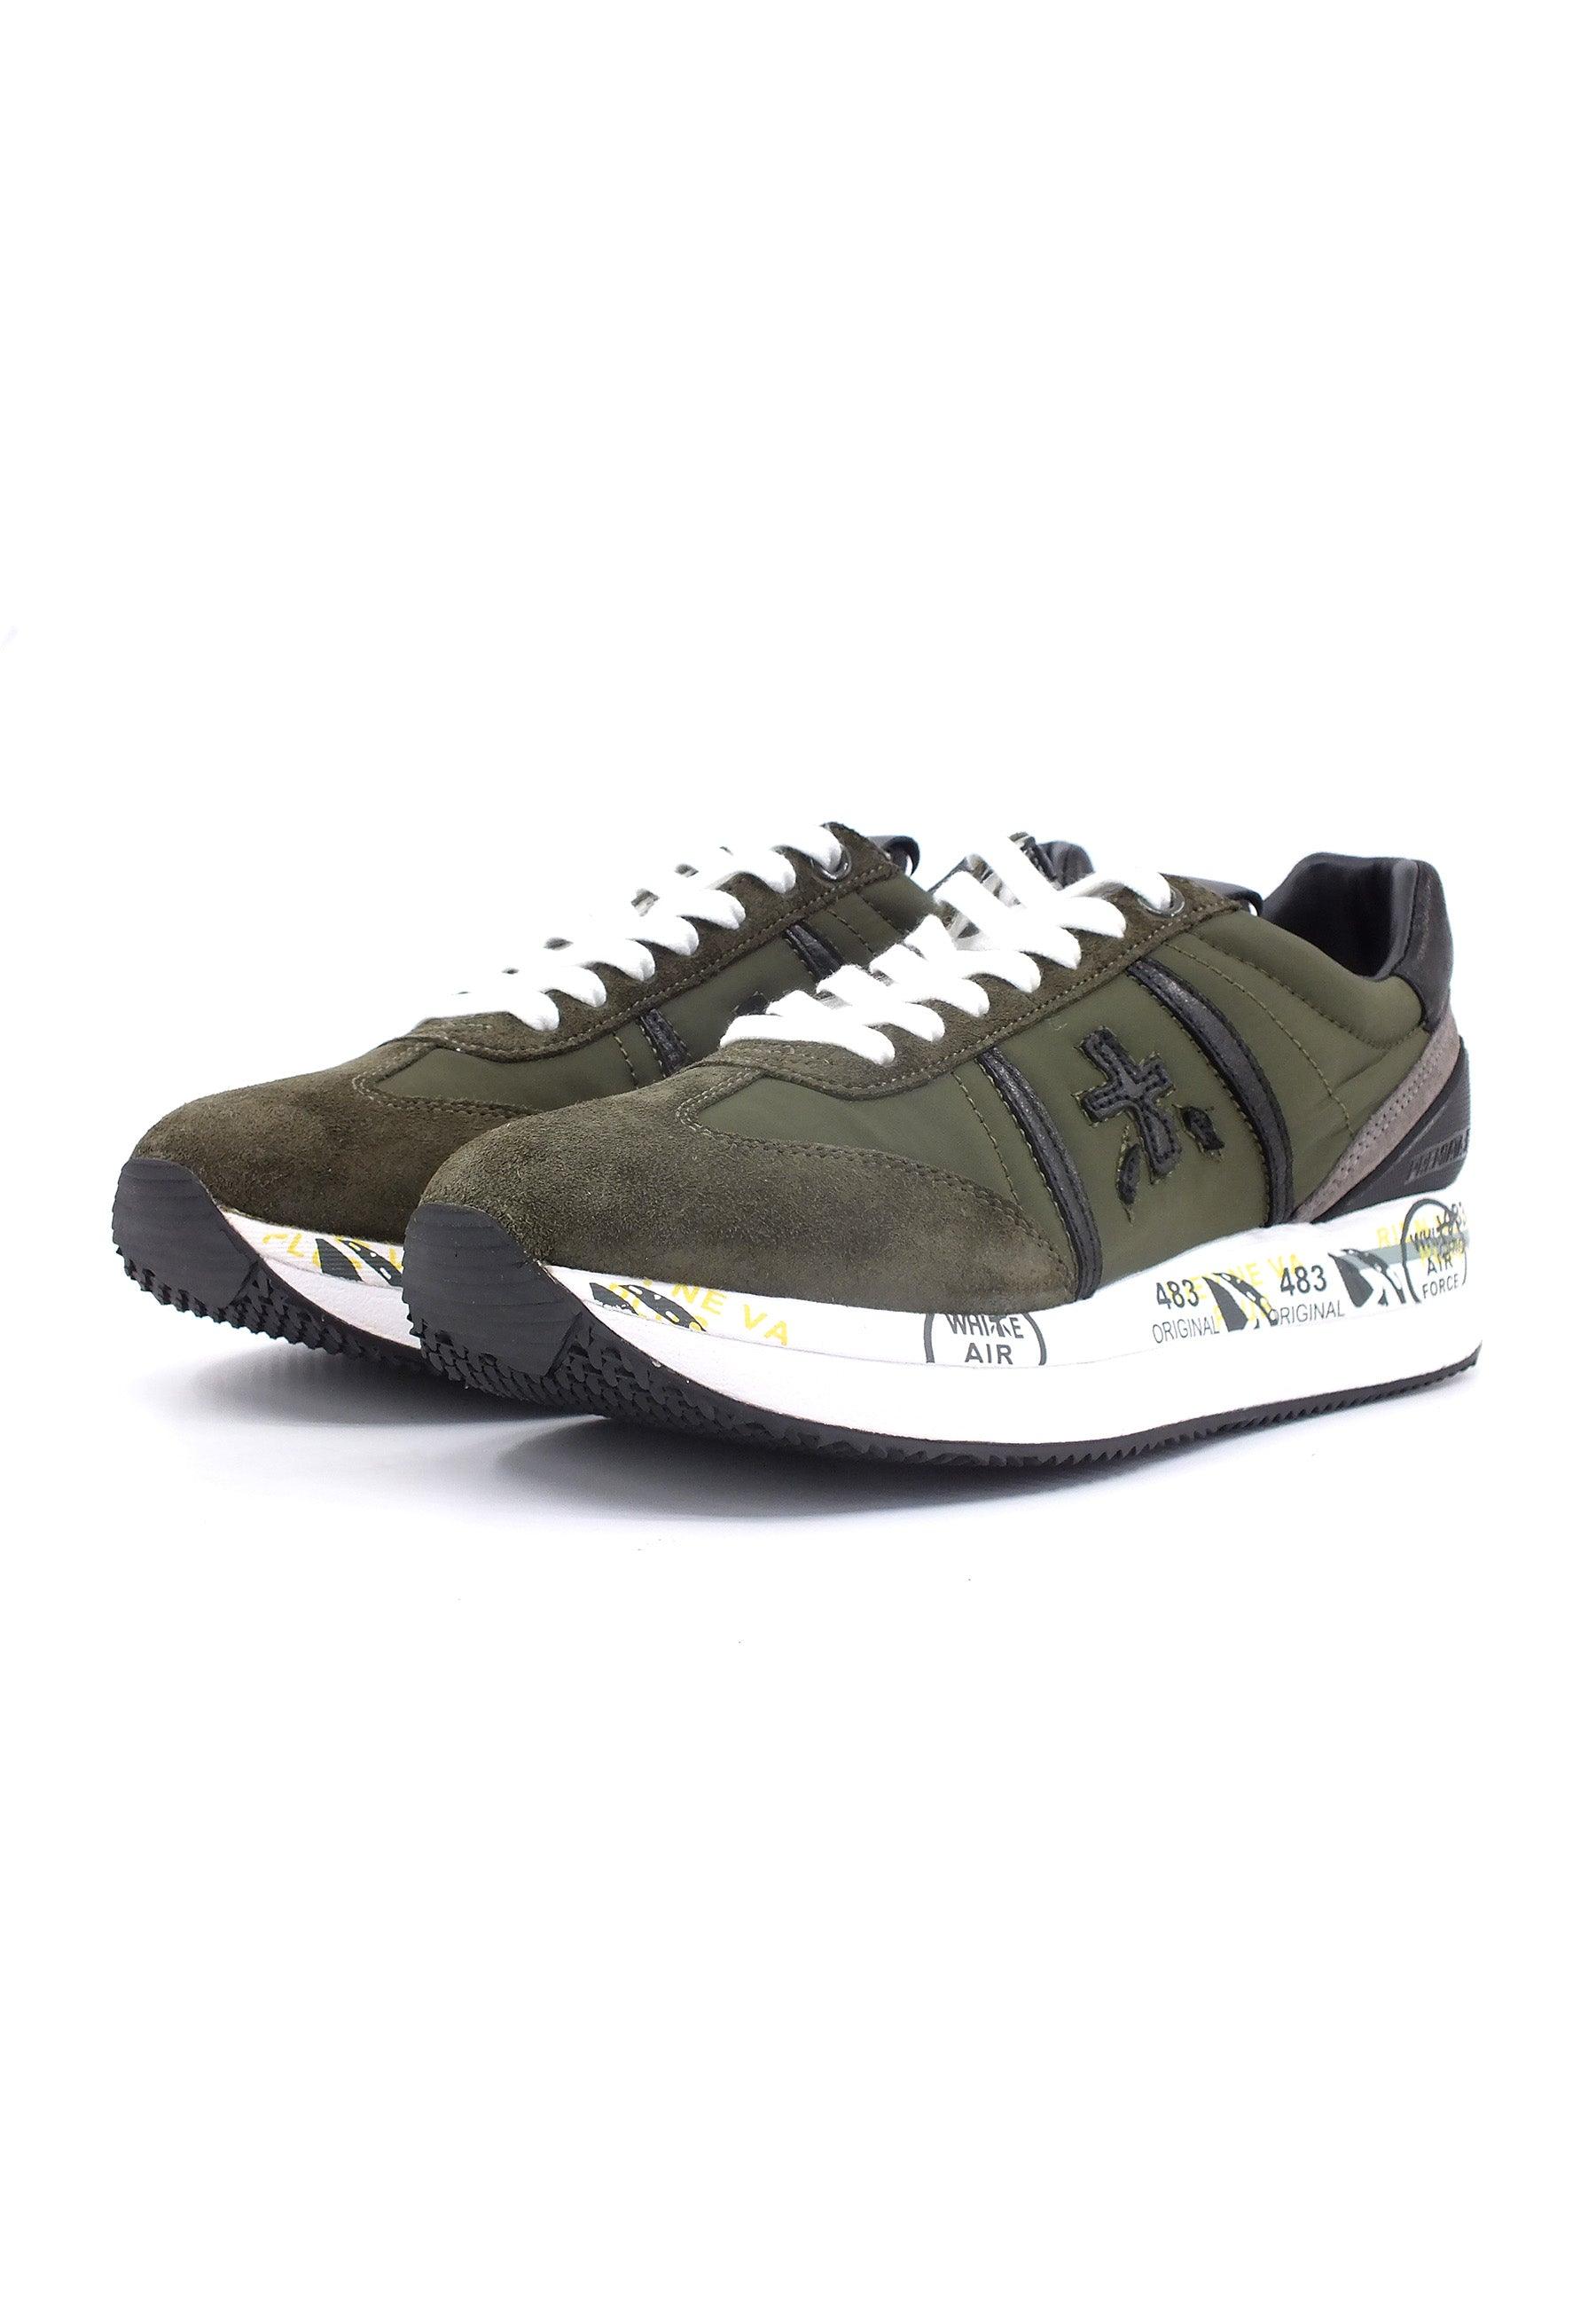 PREMIATA Sneaker Donna Military Green CONNY-6495 - Sandrini Calzature e Abbigliamento